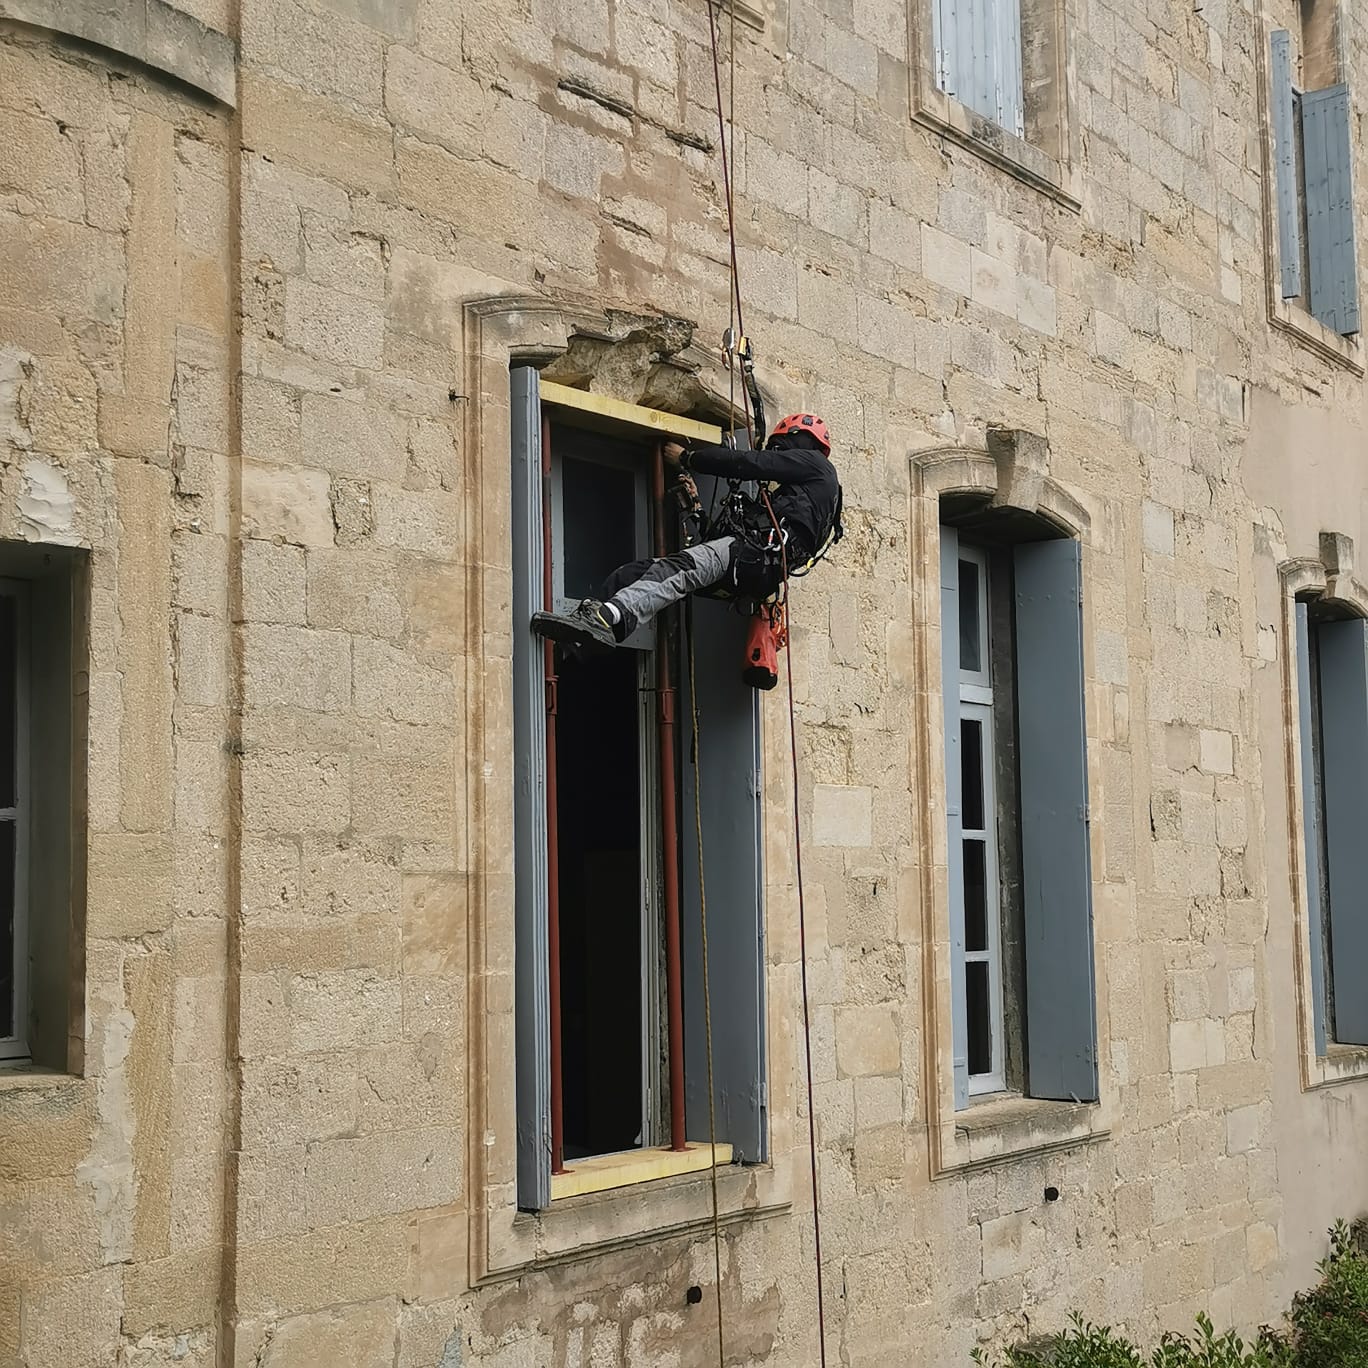 Travaux en hauteur pour le confortement d'une fenêtre d'un bâtiment historique pour sécuriser et éviter un affaissement